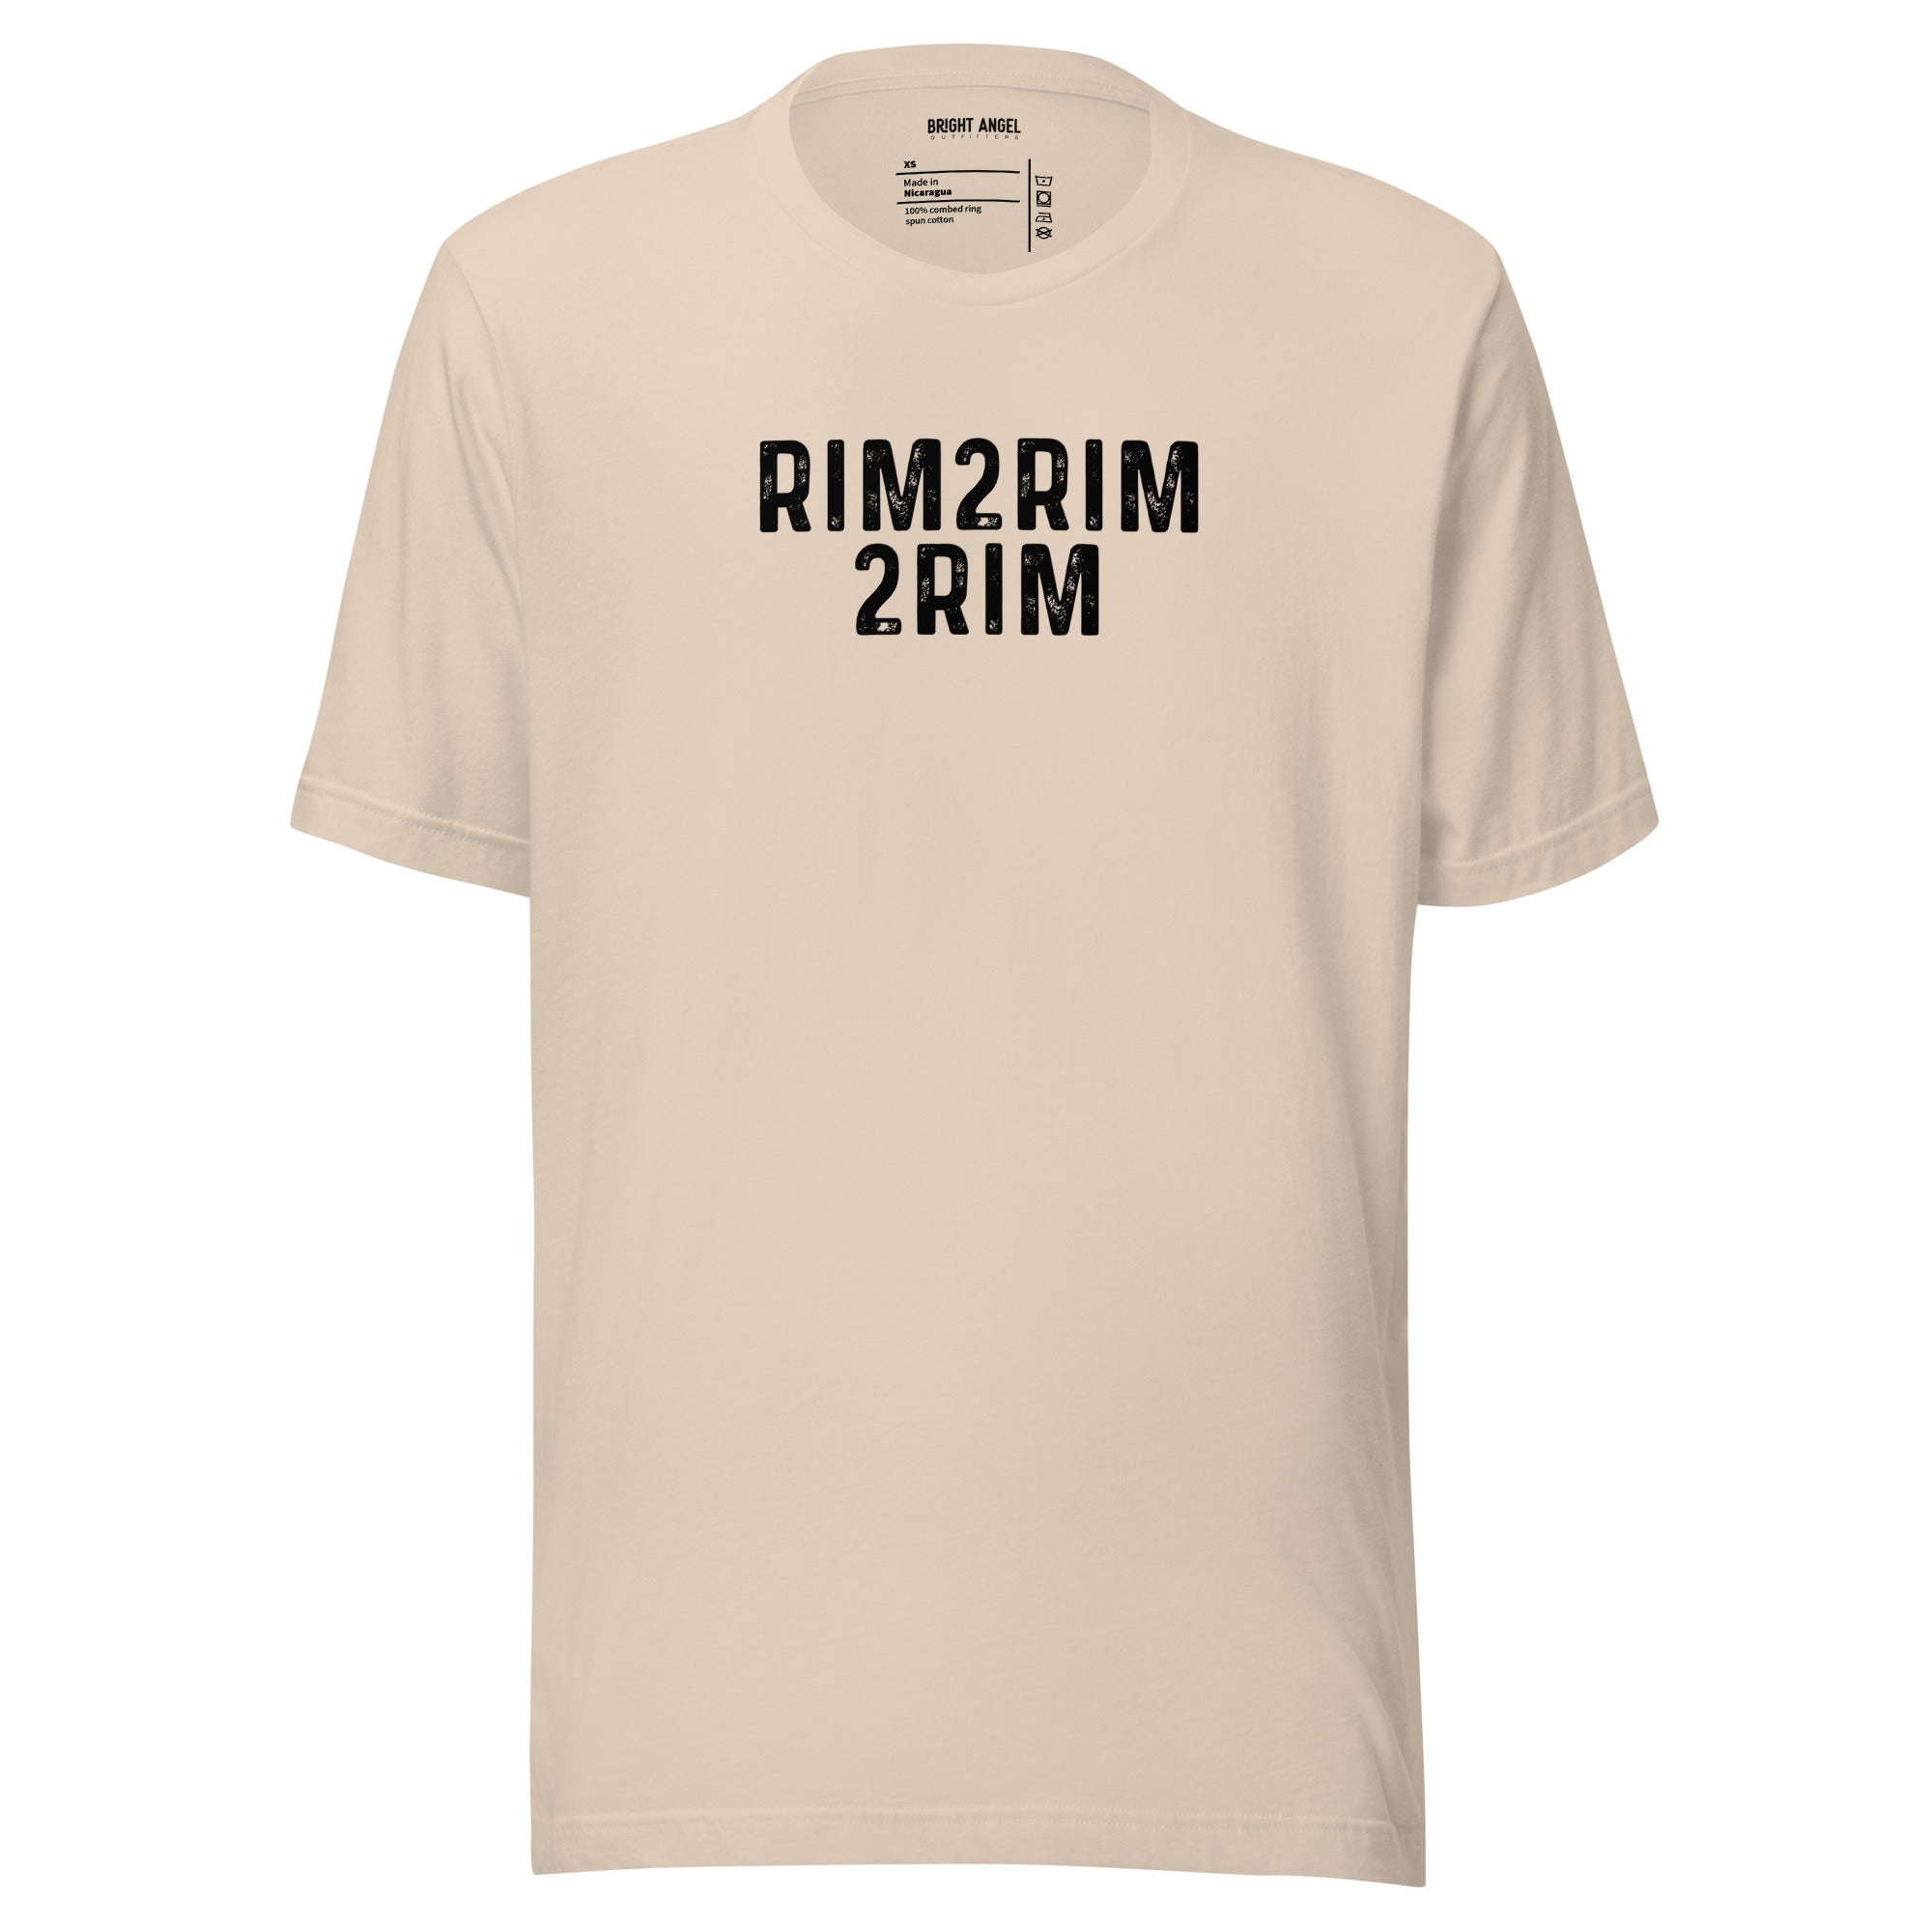 Rim2Rim2Rim (Double Crossing) Distressed Print Unisex Tee